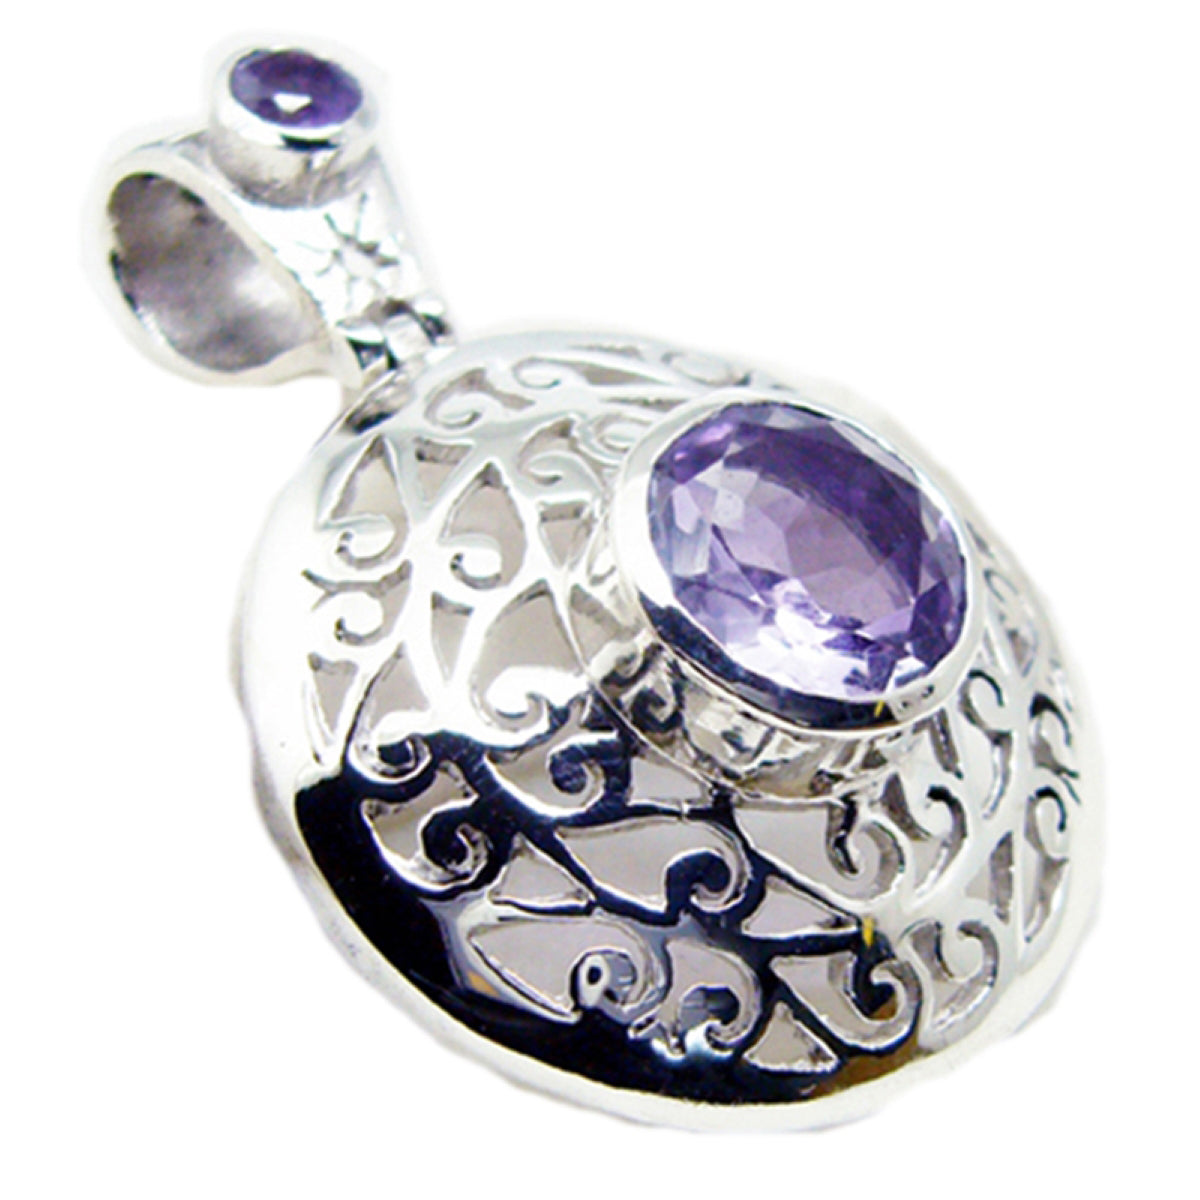 RIYO привлекательный круглый граненый драгоценный камень с фиолетовым аметистом, серебряный кулон в подарок для женщин